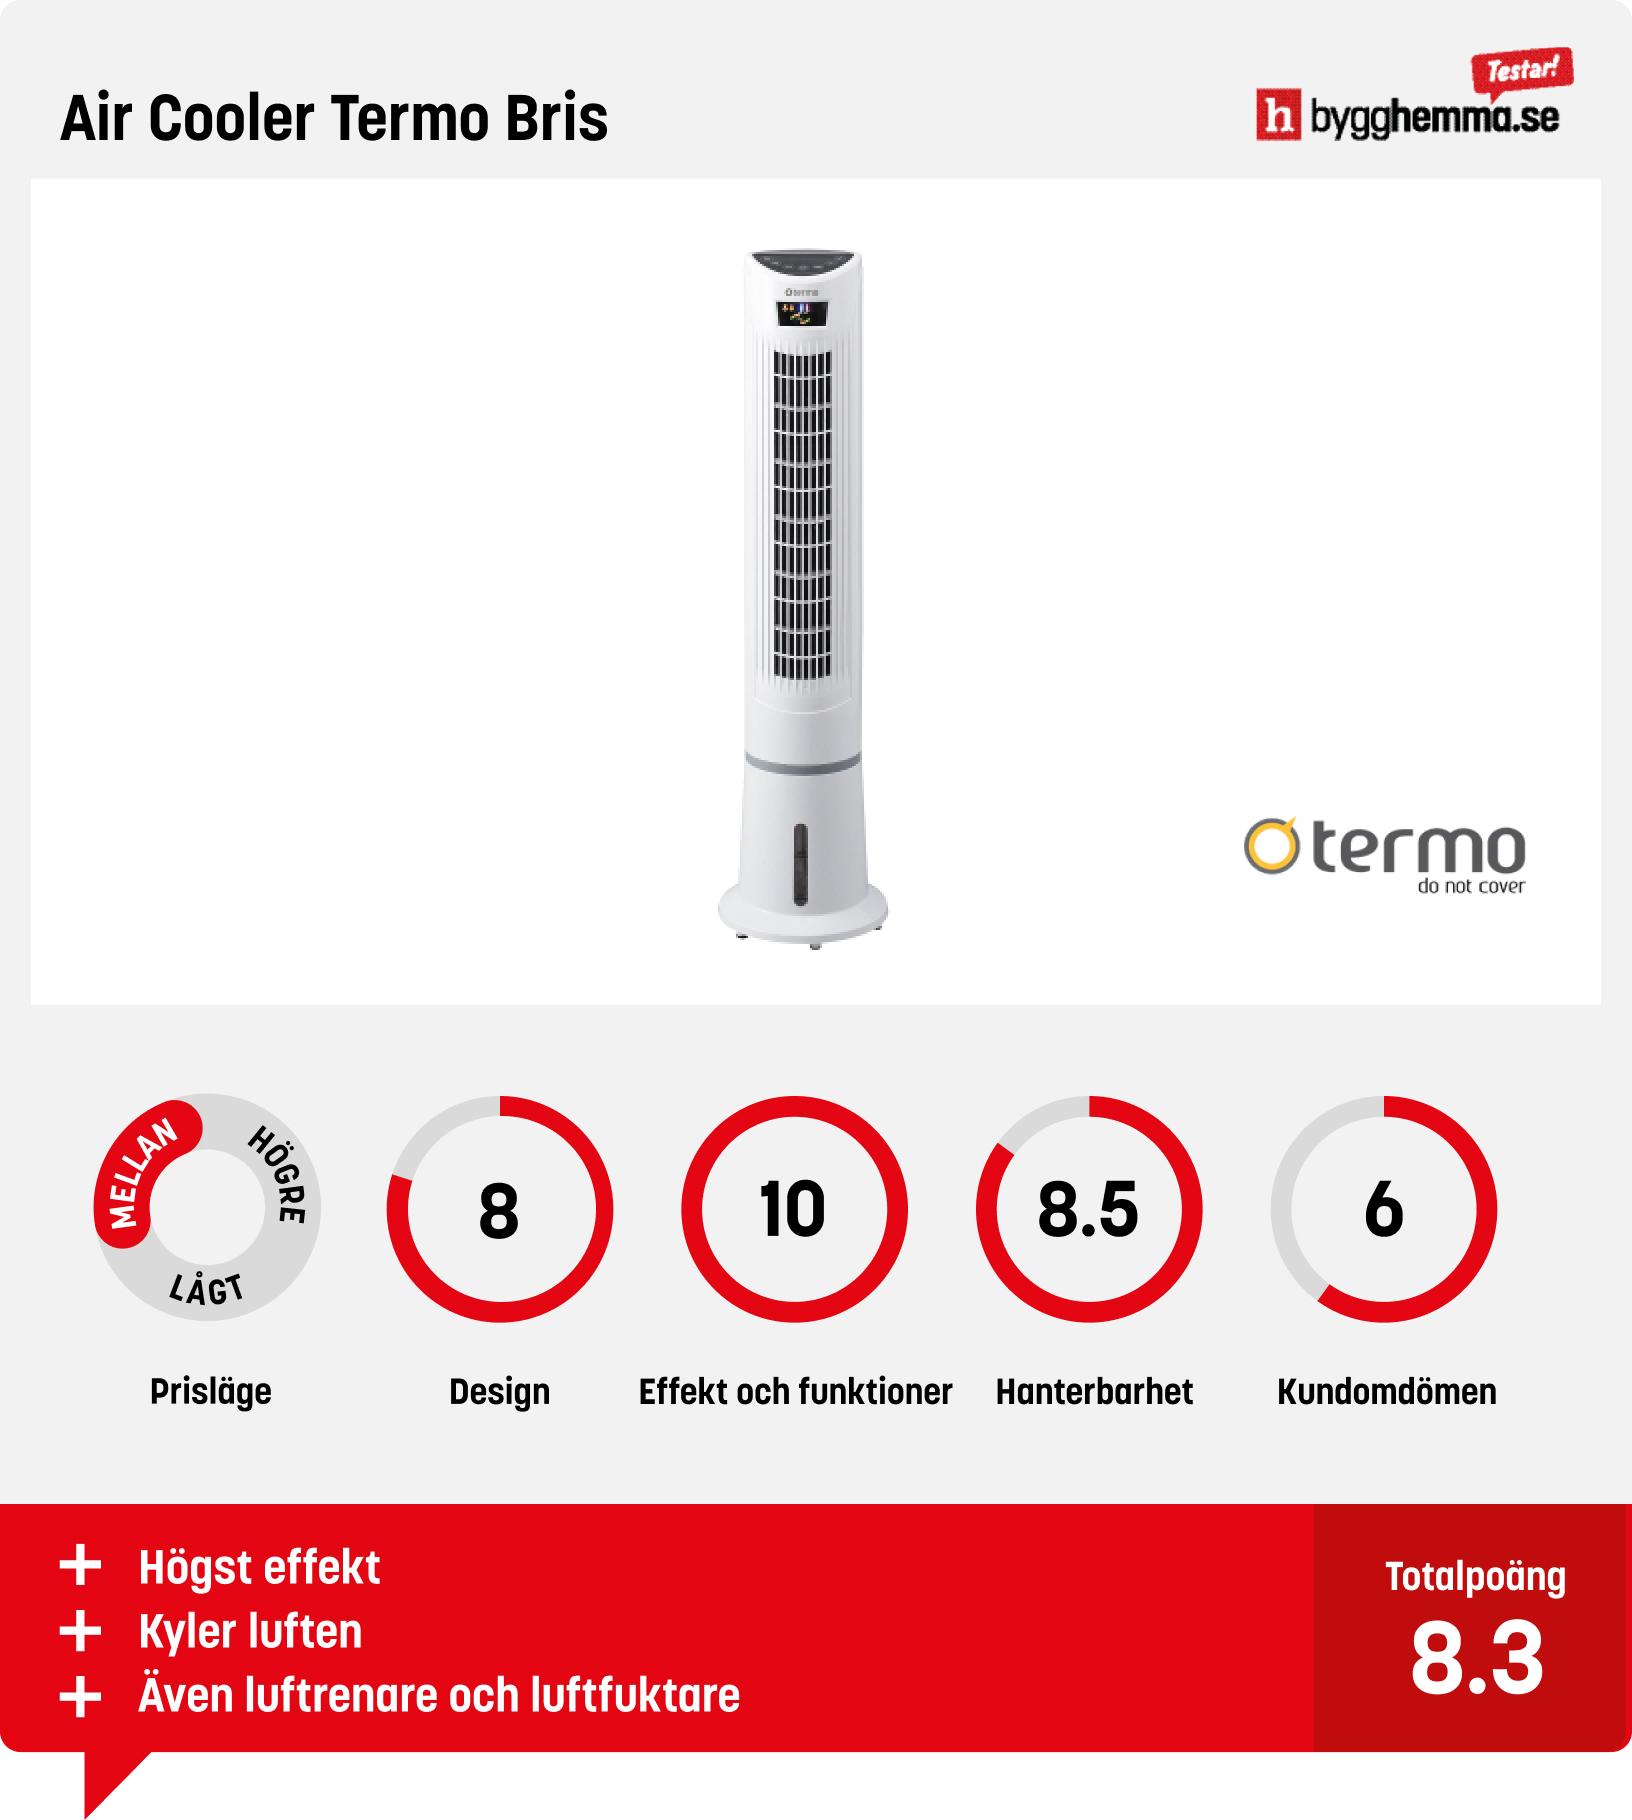 Pelarfläkt bäst i test - Air Cooler Termo Bris